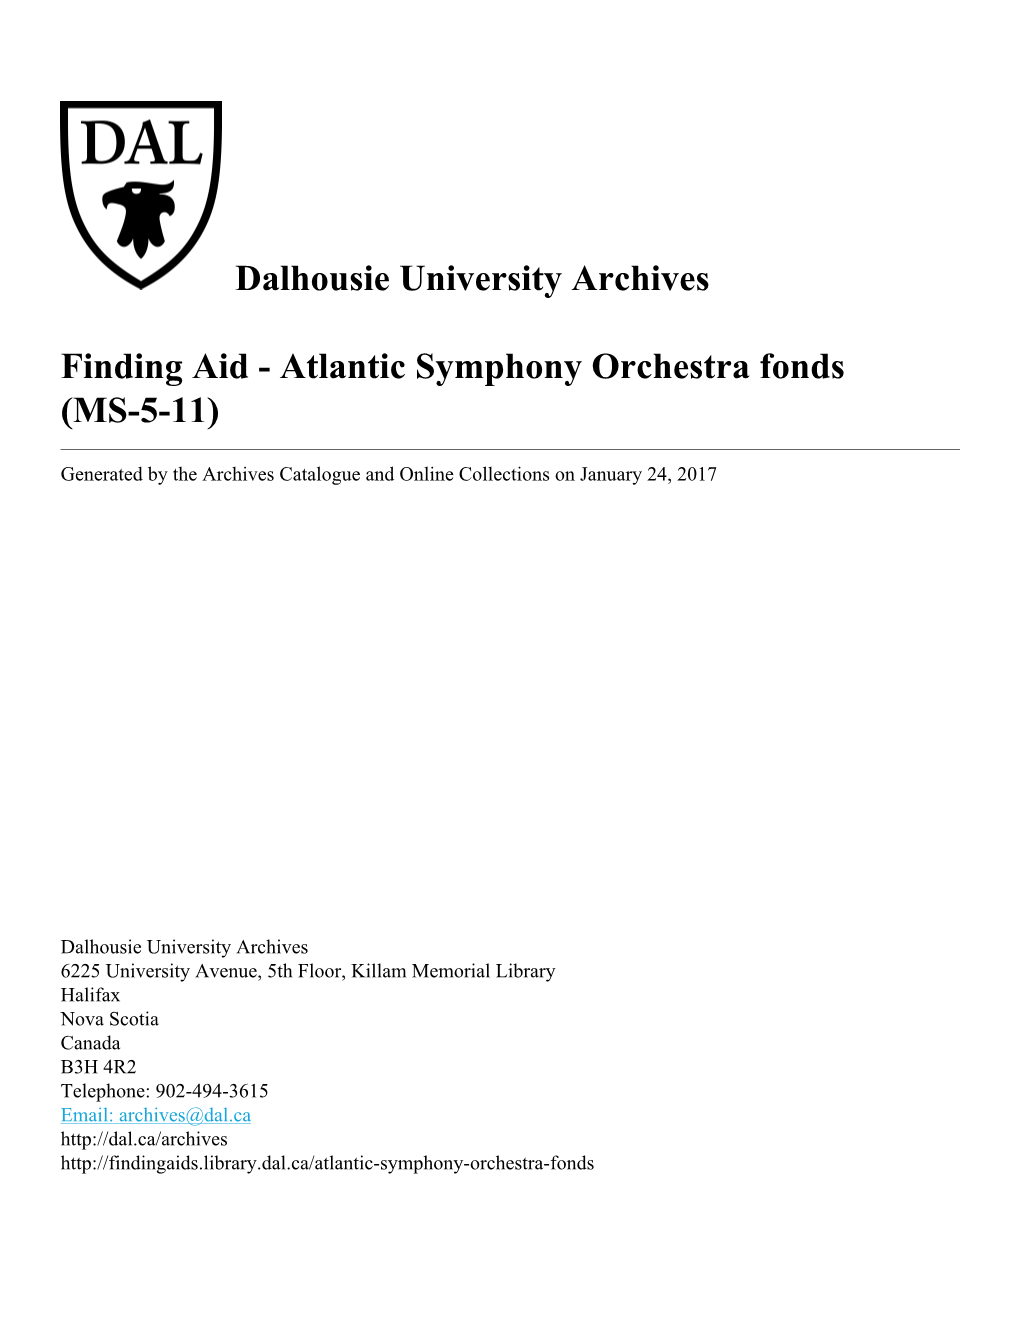 Atlantic Symphony Orchestra Fonds (MS-5-11)